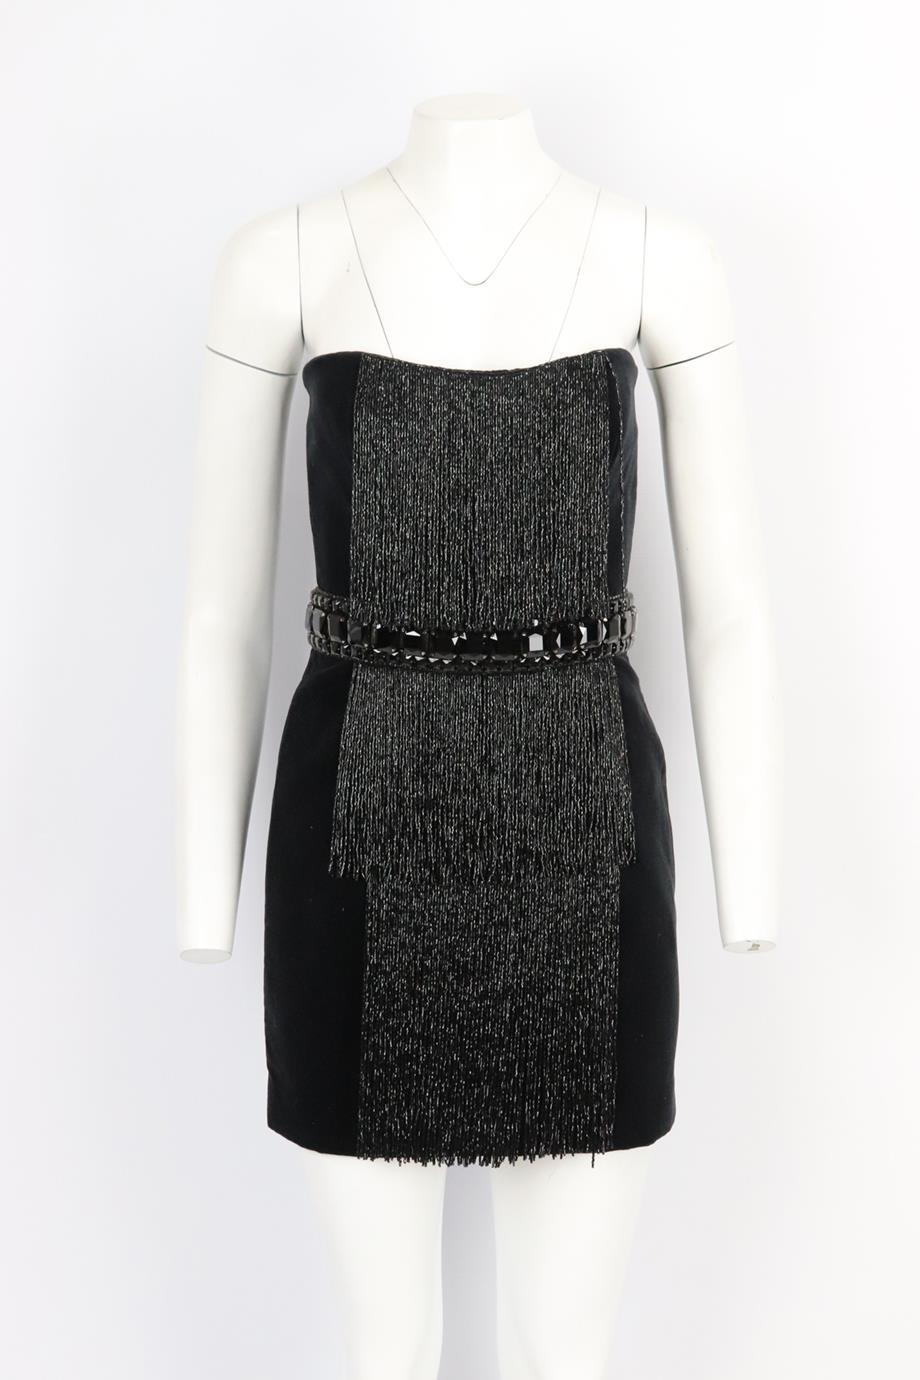 Balmain fringed beaded velvet mini dress. Black. Sleeveless, strapless. 100% Cotton; fabric2: 82% polyamide, 18% elastane; embroidery: 90% glass, 10% brass. Size: FR 38 (UK 10, US 6, IT 42). Bust: 34 in. Waist: 28 in. Hips: 36.8 in. Length: 25 in.